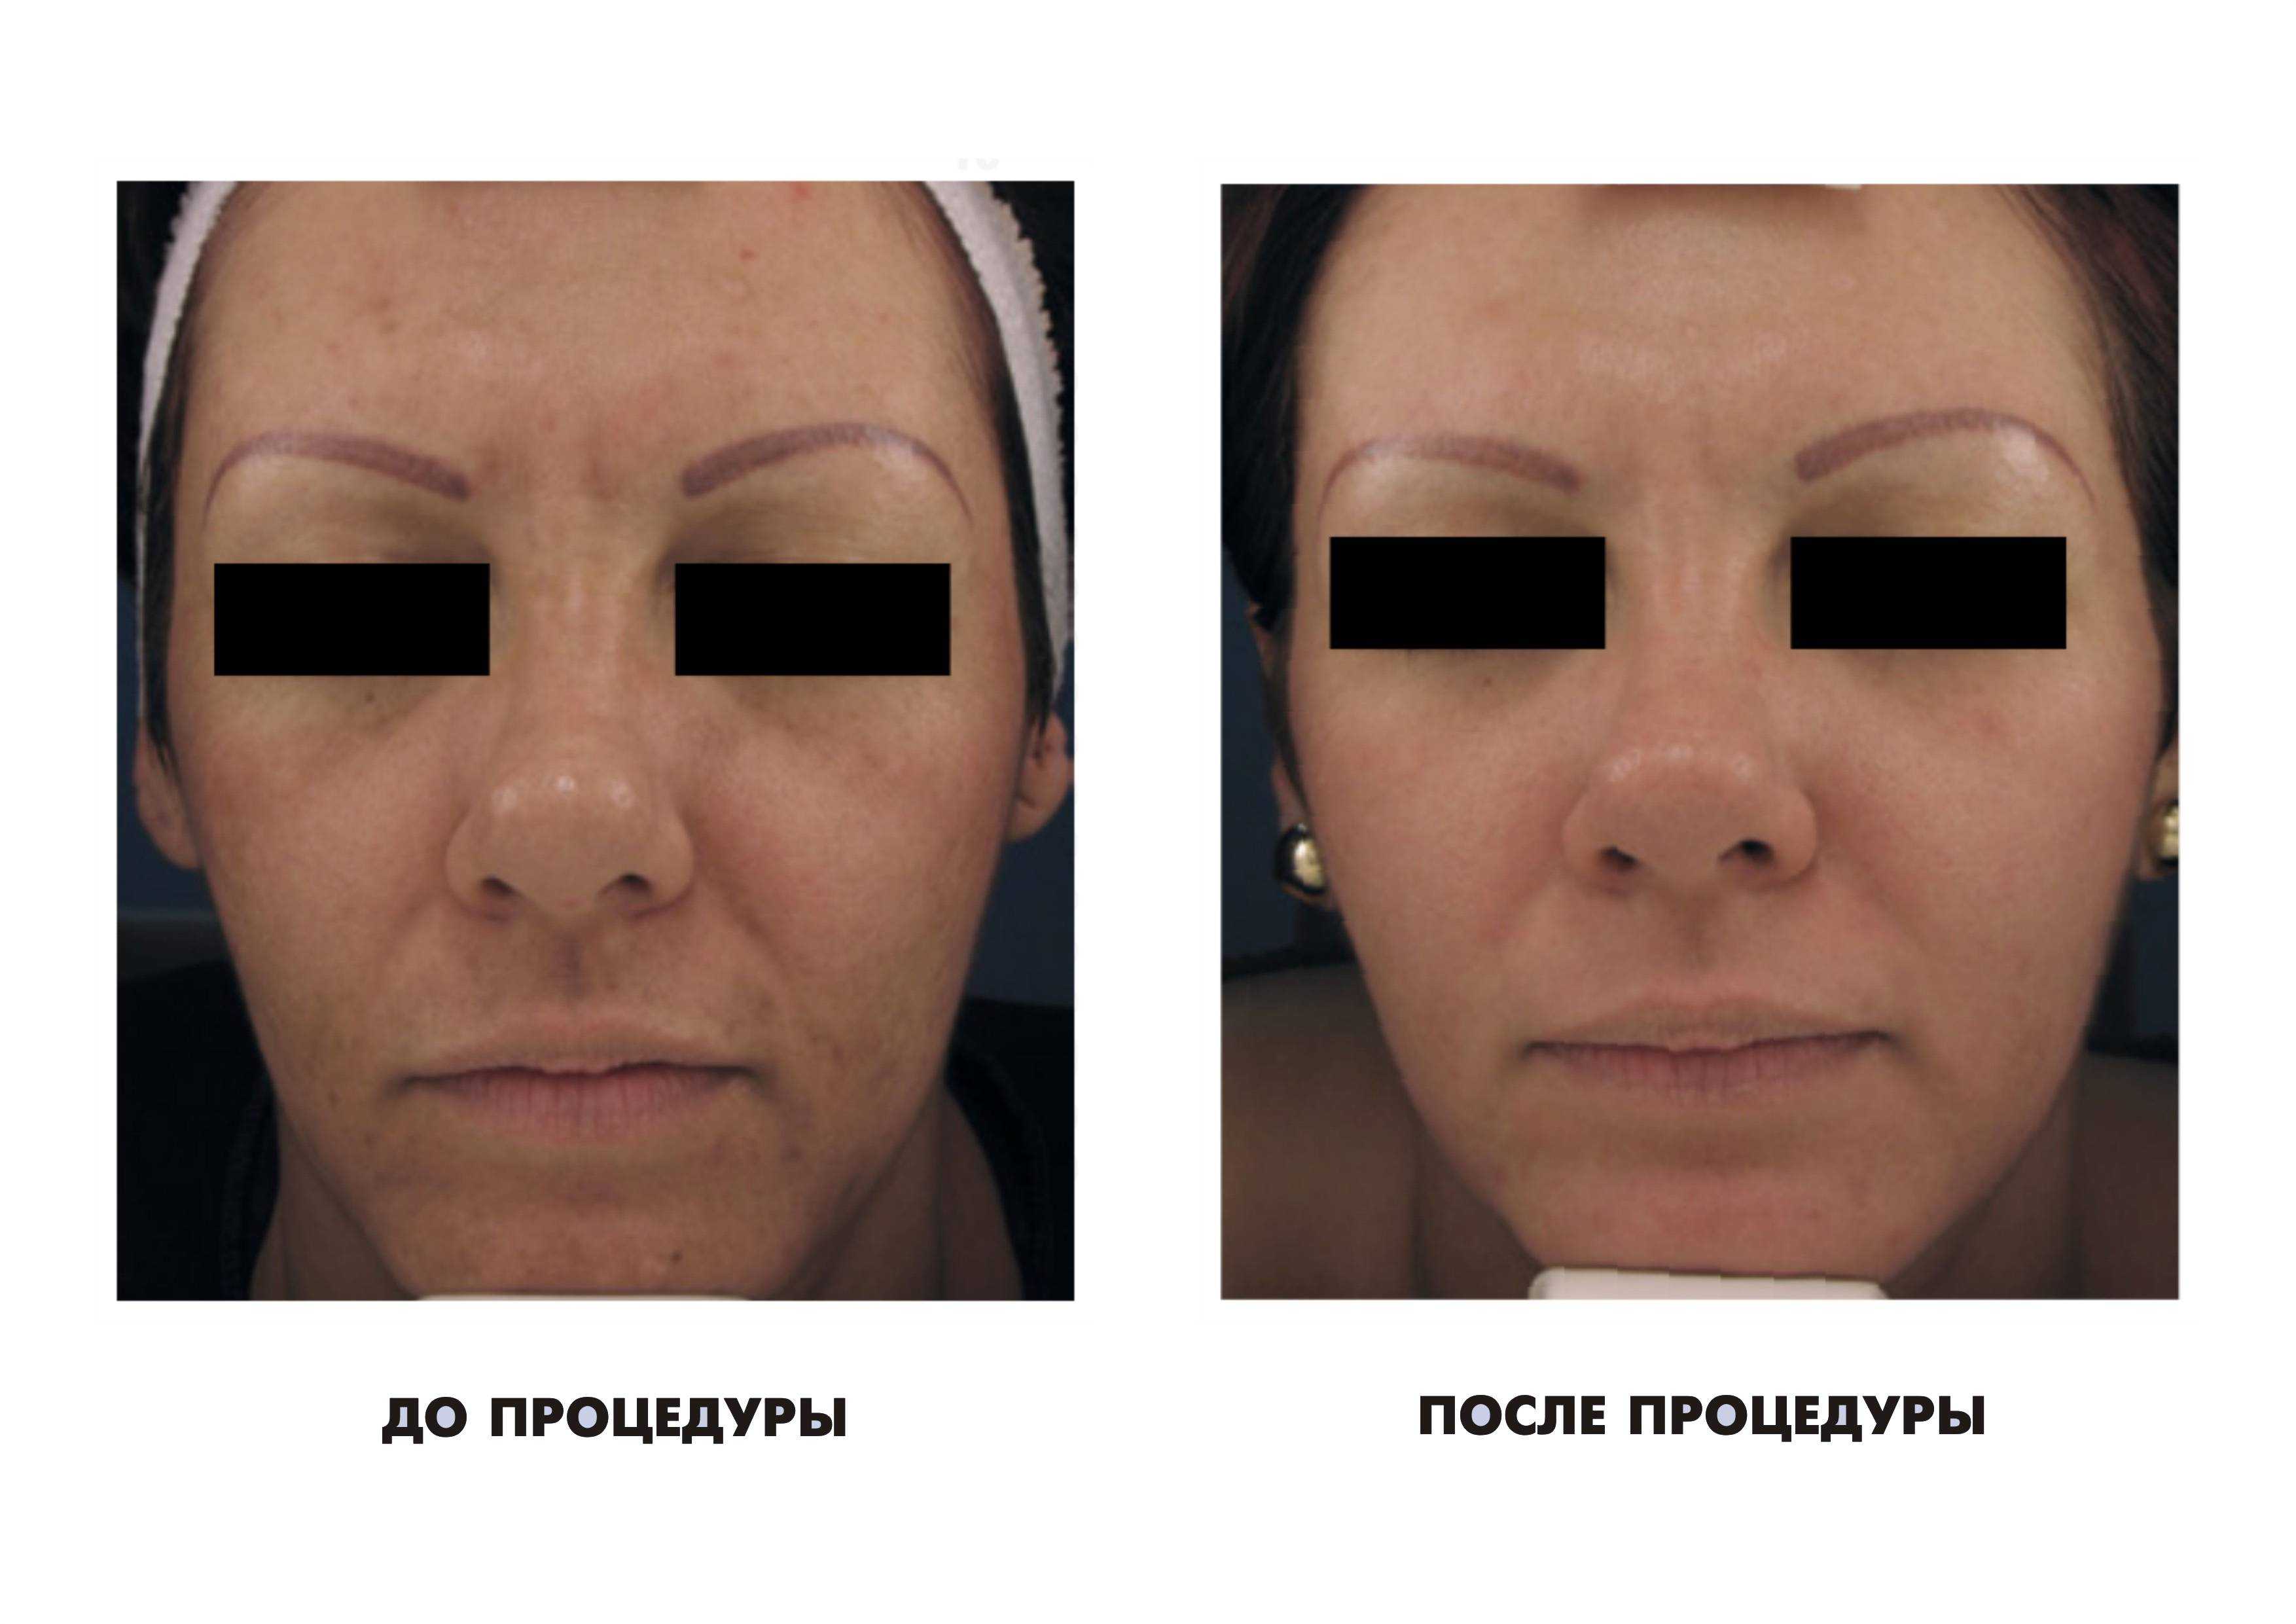 Фотоомоложение лица. Процедура фотоомоложения лица. Фотоомоложение лица до и после. Лицо после фотоомоложения до и после.